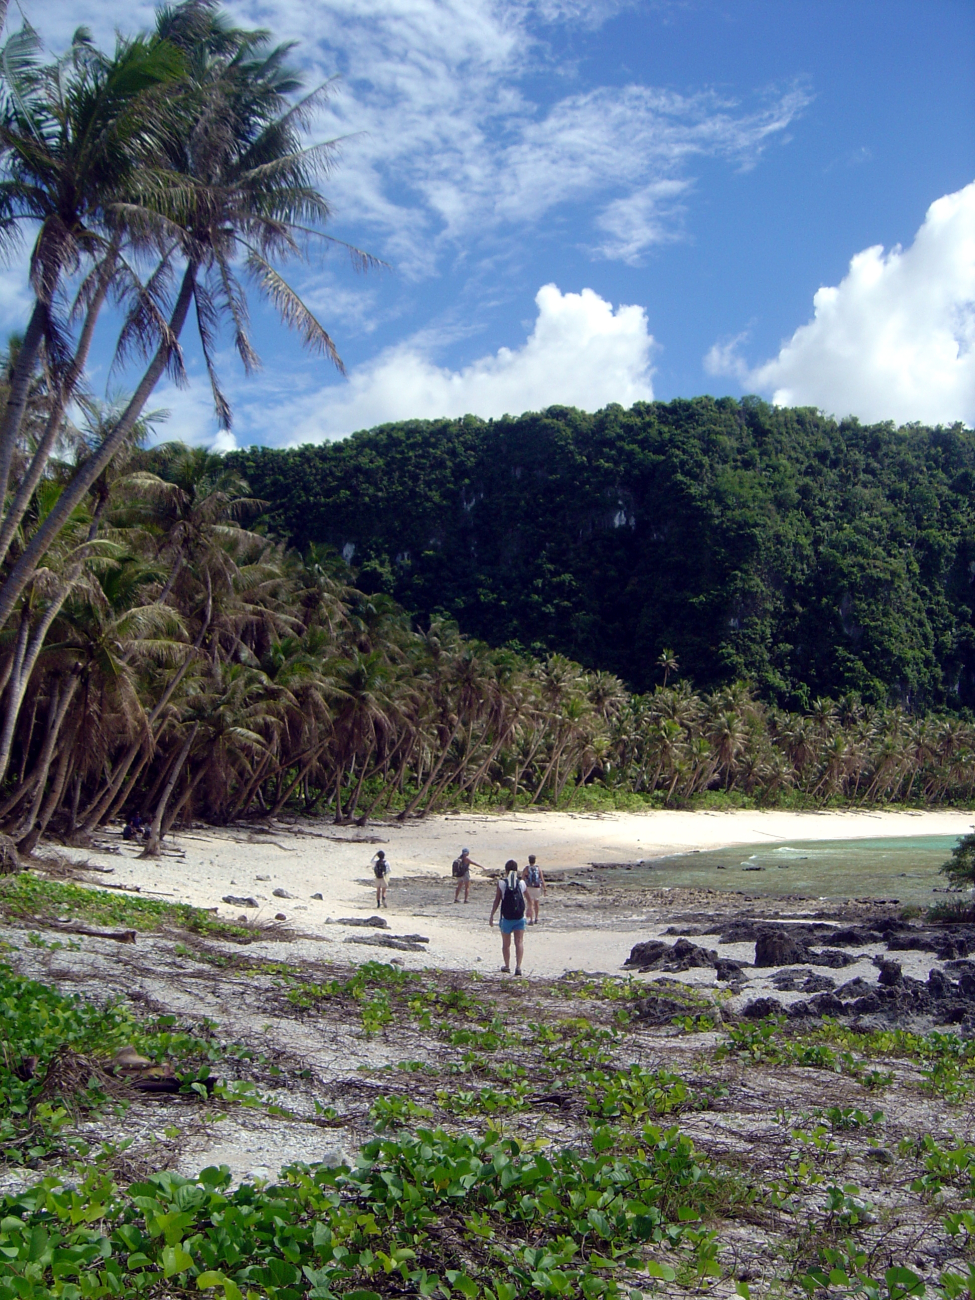 Exploring the hidden recesses of the Guam coastline